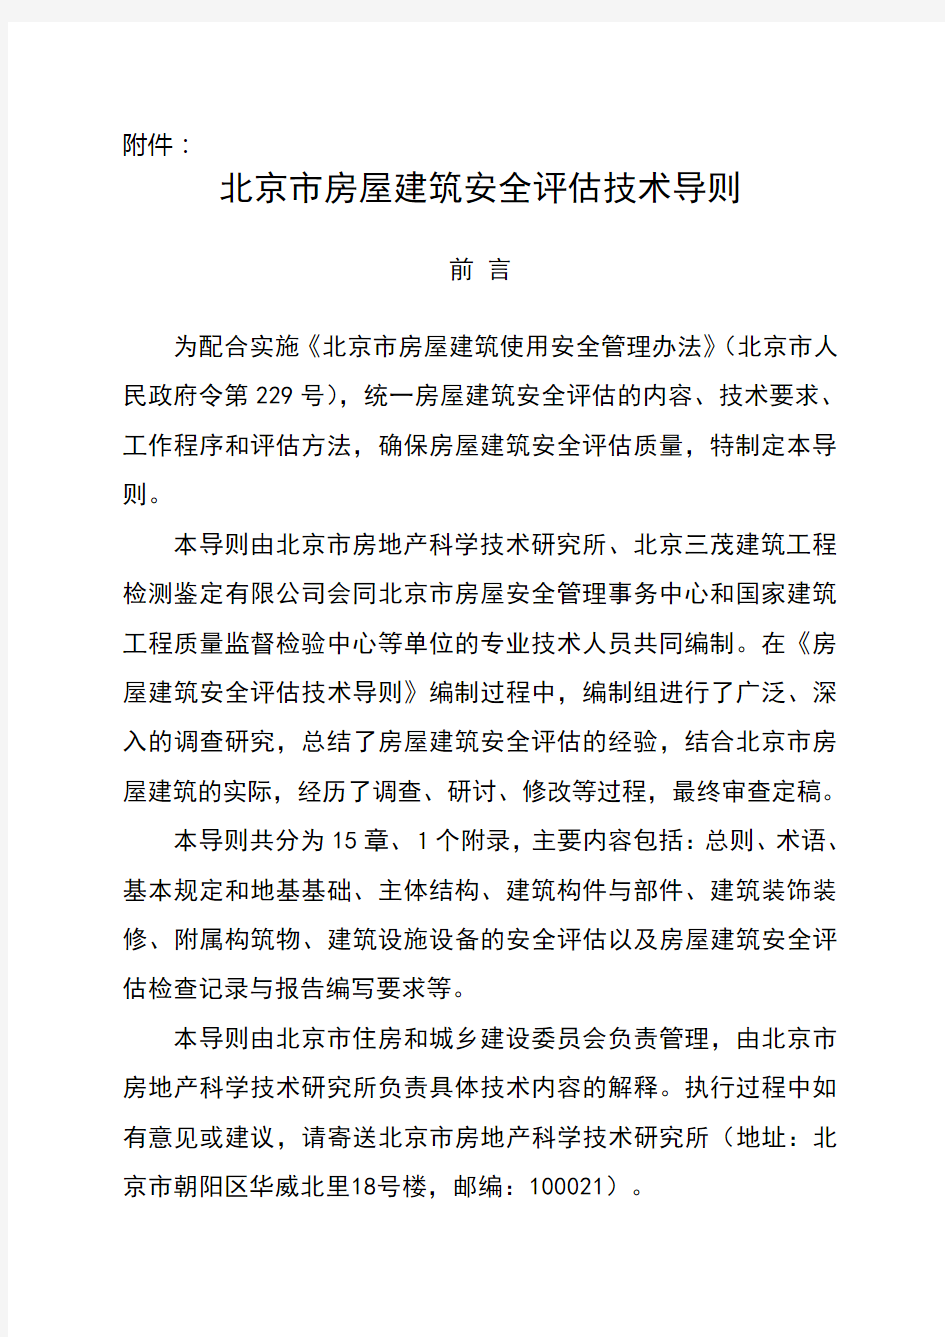 北京市房屋建筑安全评估技术导则